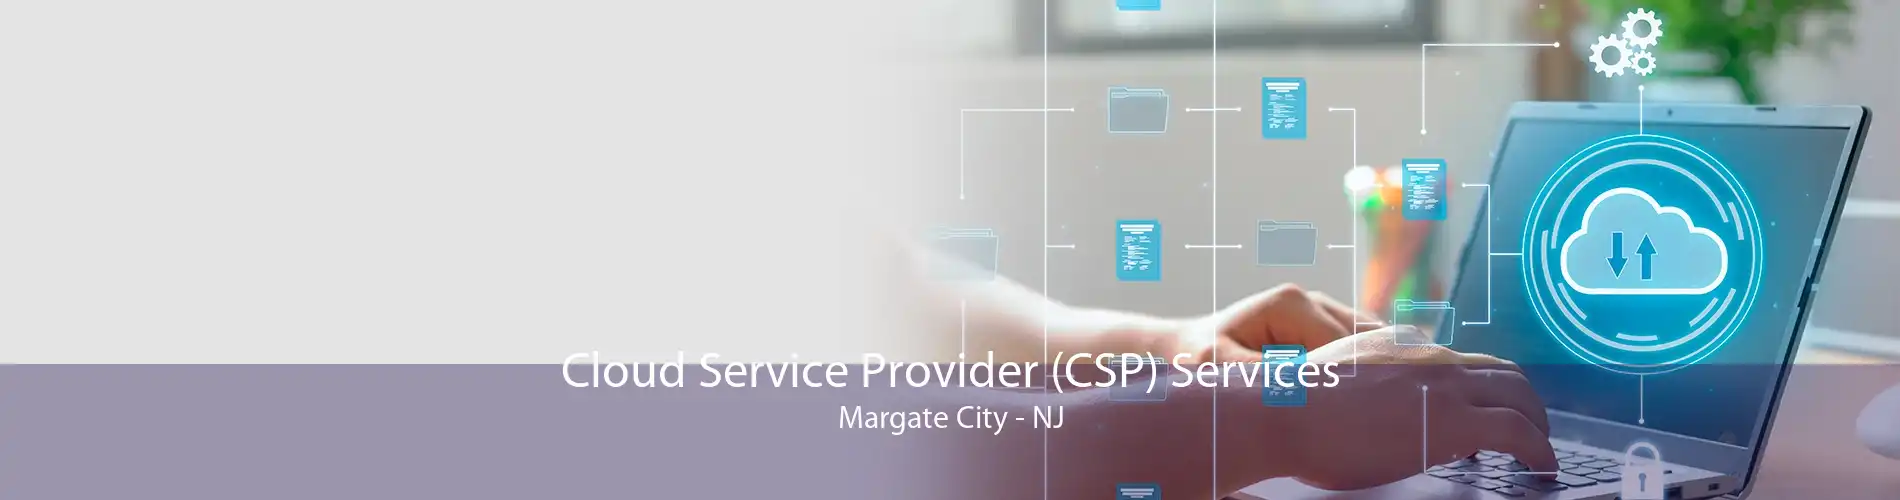 Cloud Service Provider (CSP) Services Margate City - NJ